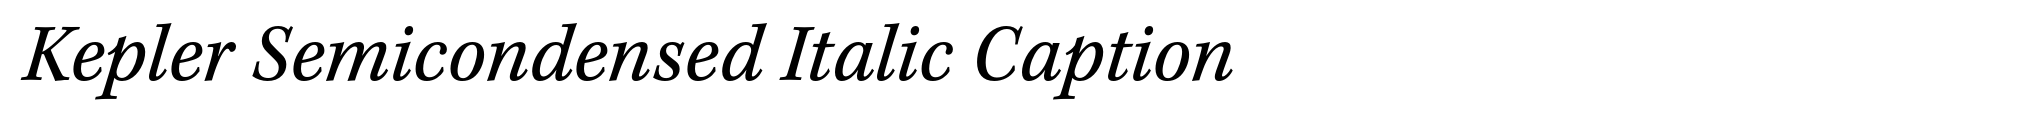 Kepler Semicondensed Italic Caption image